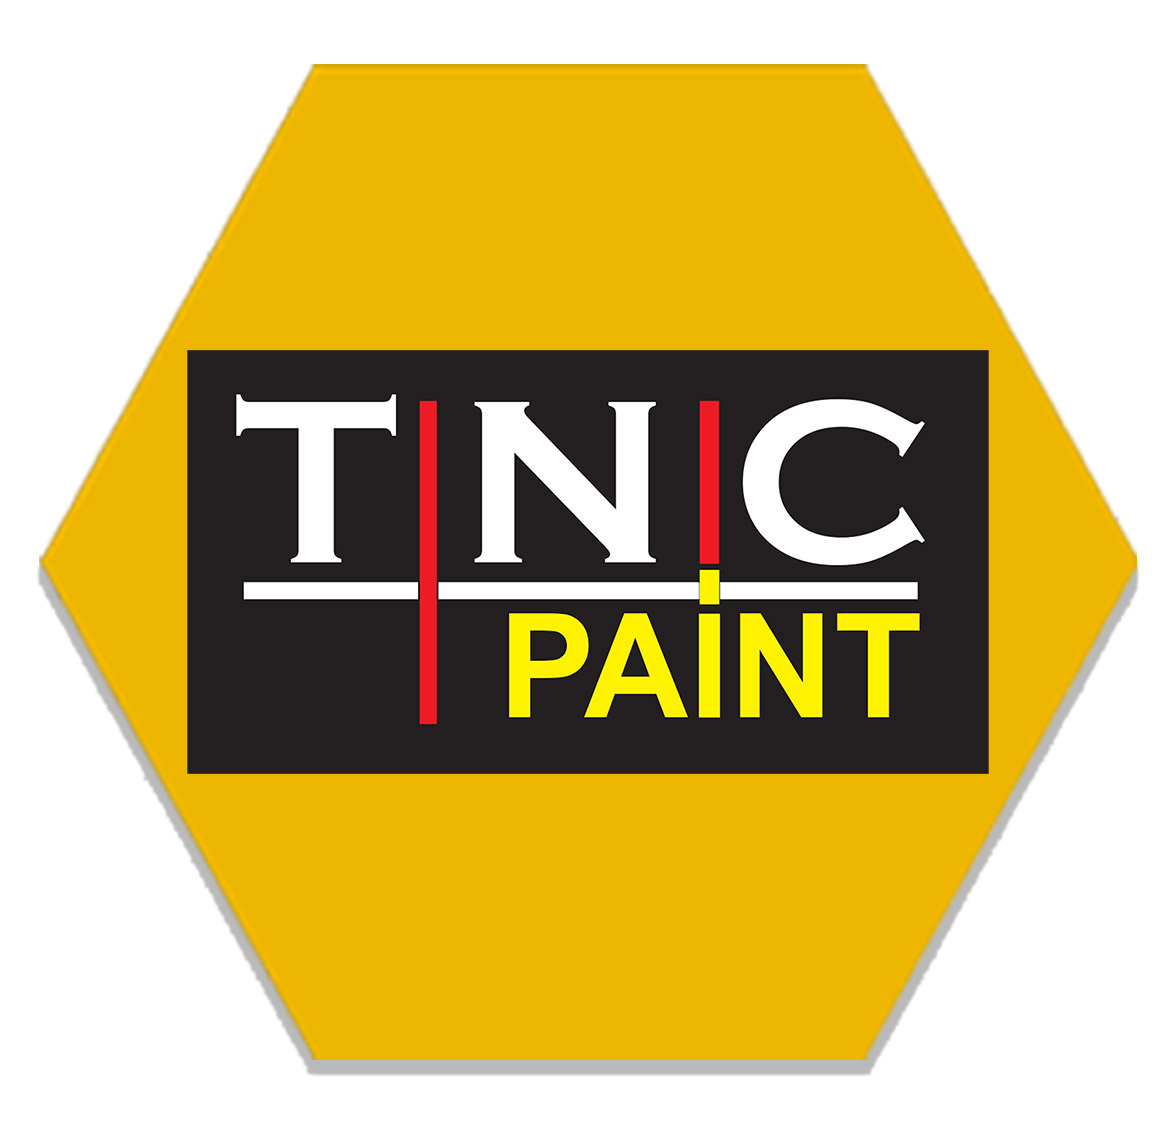 Tnc paint